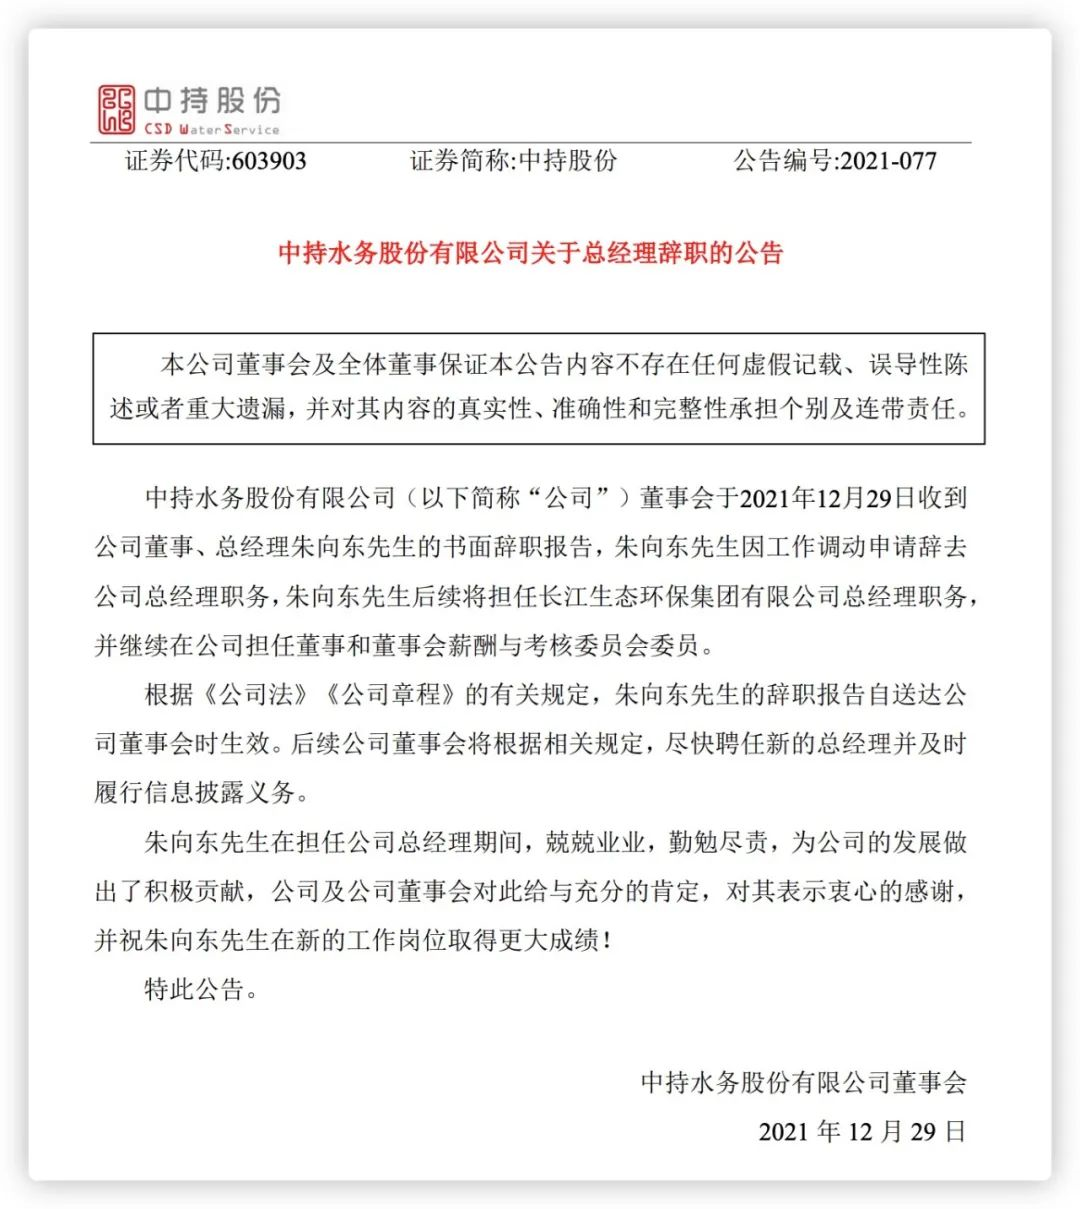 中持股份公告朱向东辞去总经理并将担任长江生态环保总经理